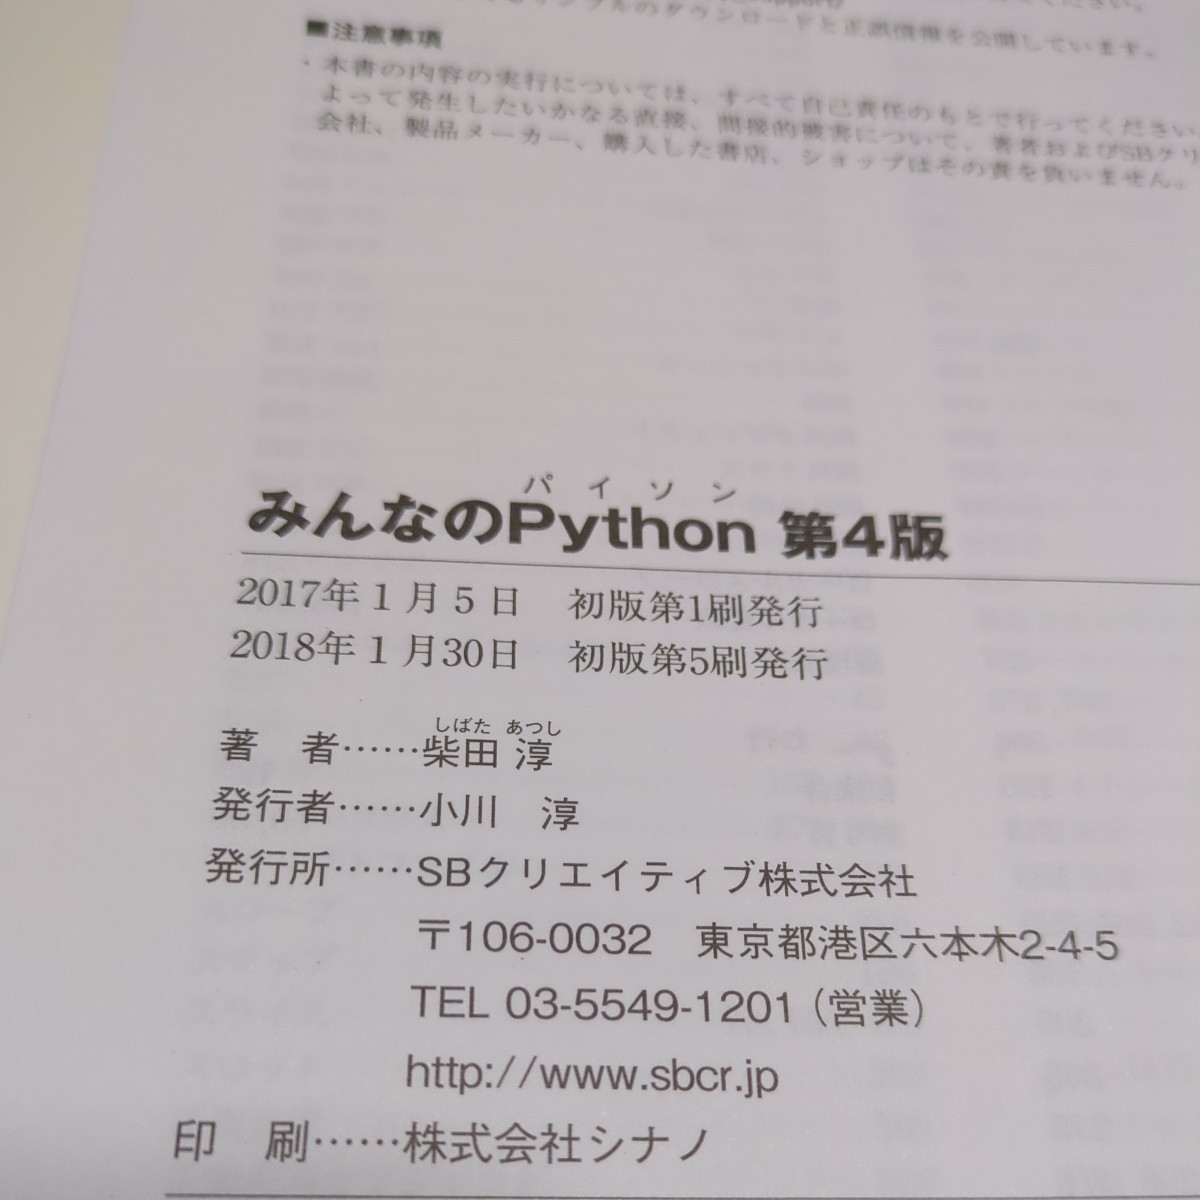 第4版 みんなのPython 柴田淳 SB Creative 中古 パイソン プログラミング オブジェクト指向スクリプト言語 ソフトウェア データサイエンス_画像4